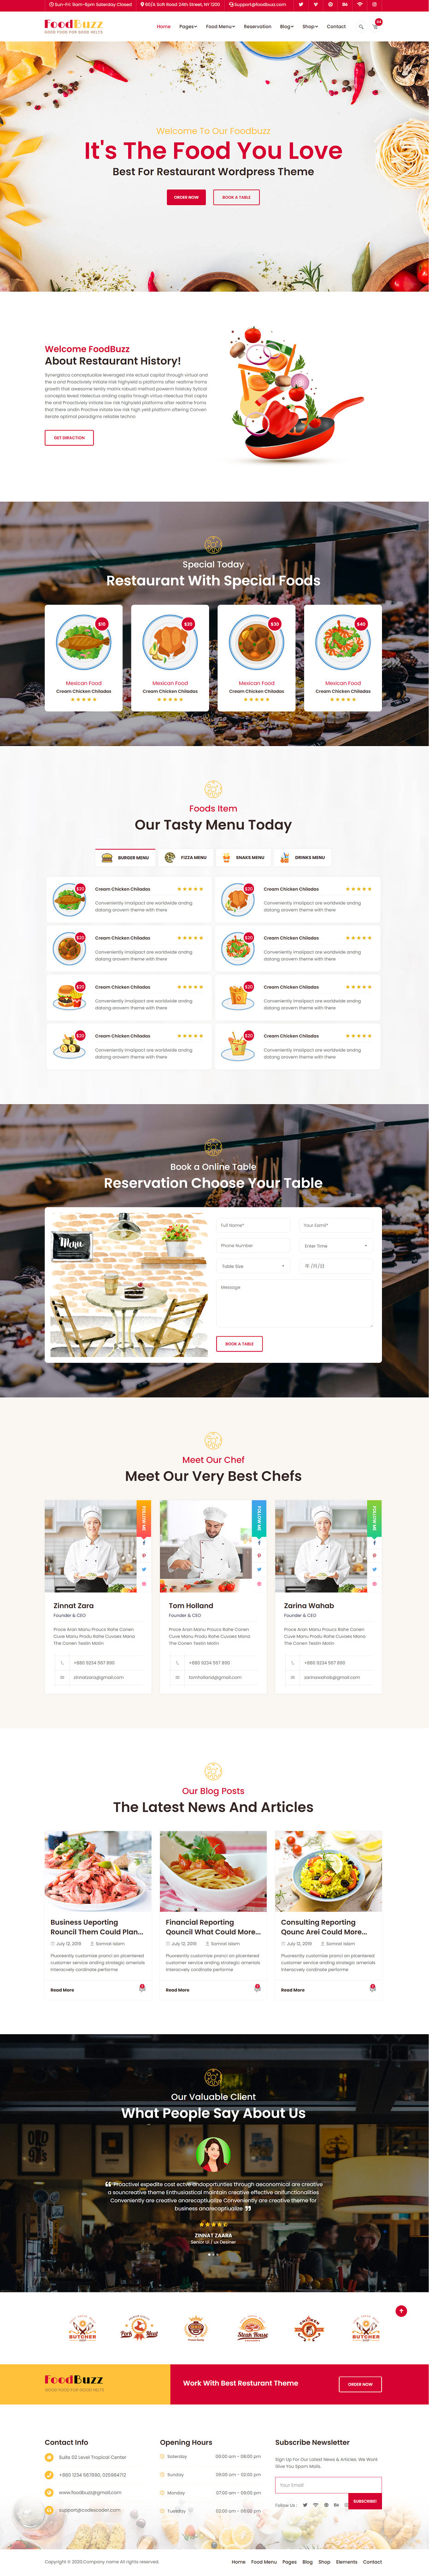 HTML5红色宽屏样式美食餐饮店铺企业网站模板代码下载